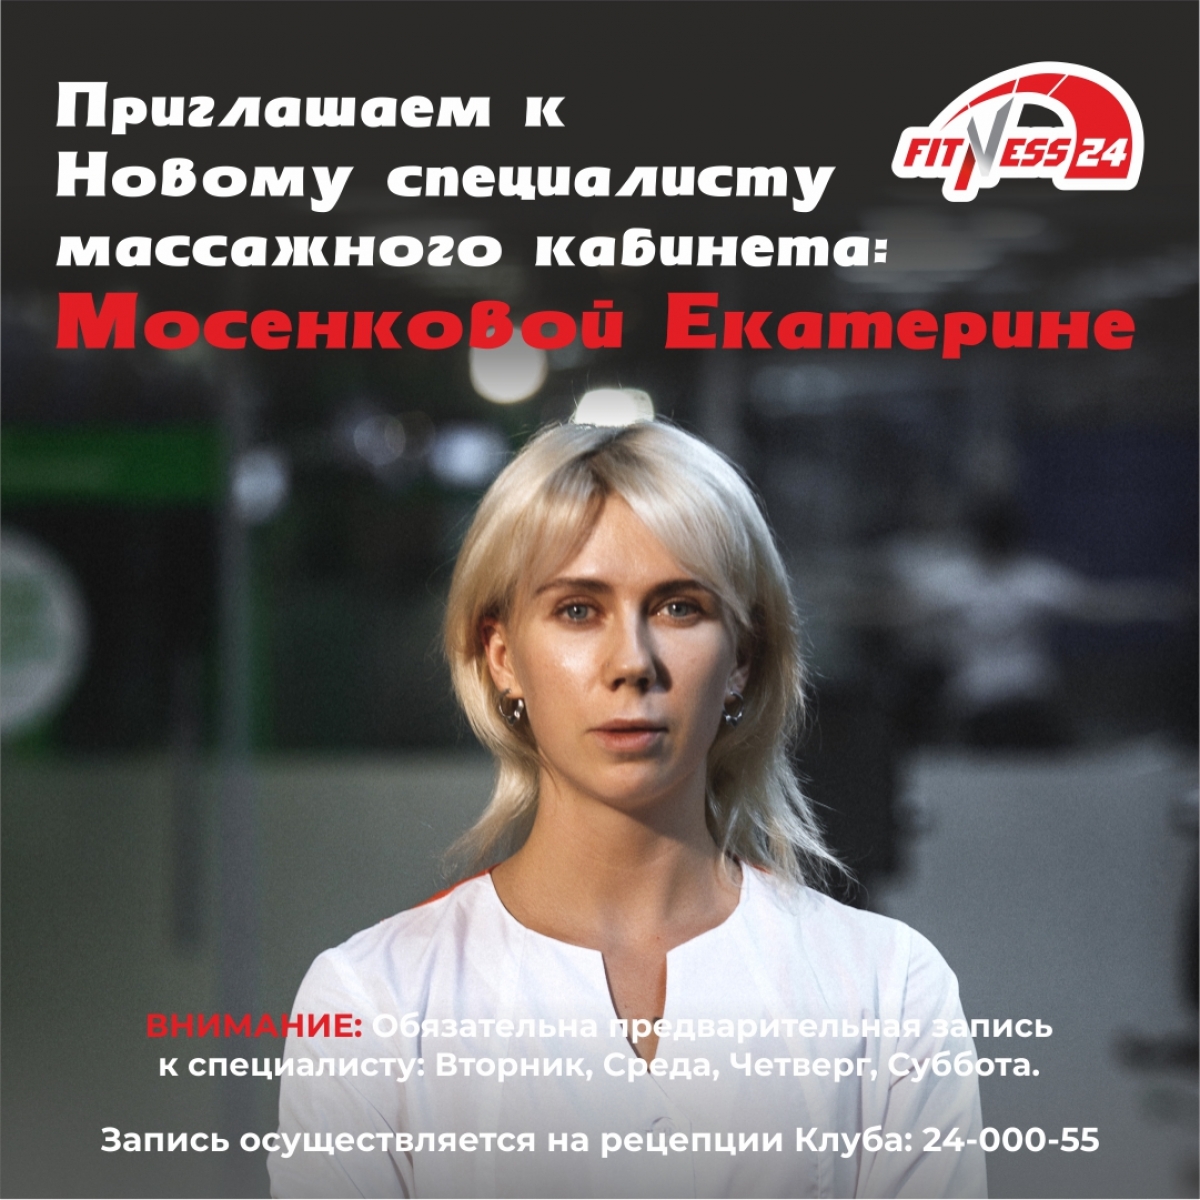 Приглашаем к Новому специалисту массажного кабинета Fitness24 Лиговский Мосенковой Екатерине! 